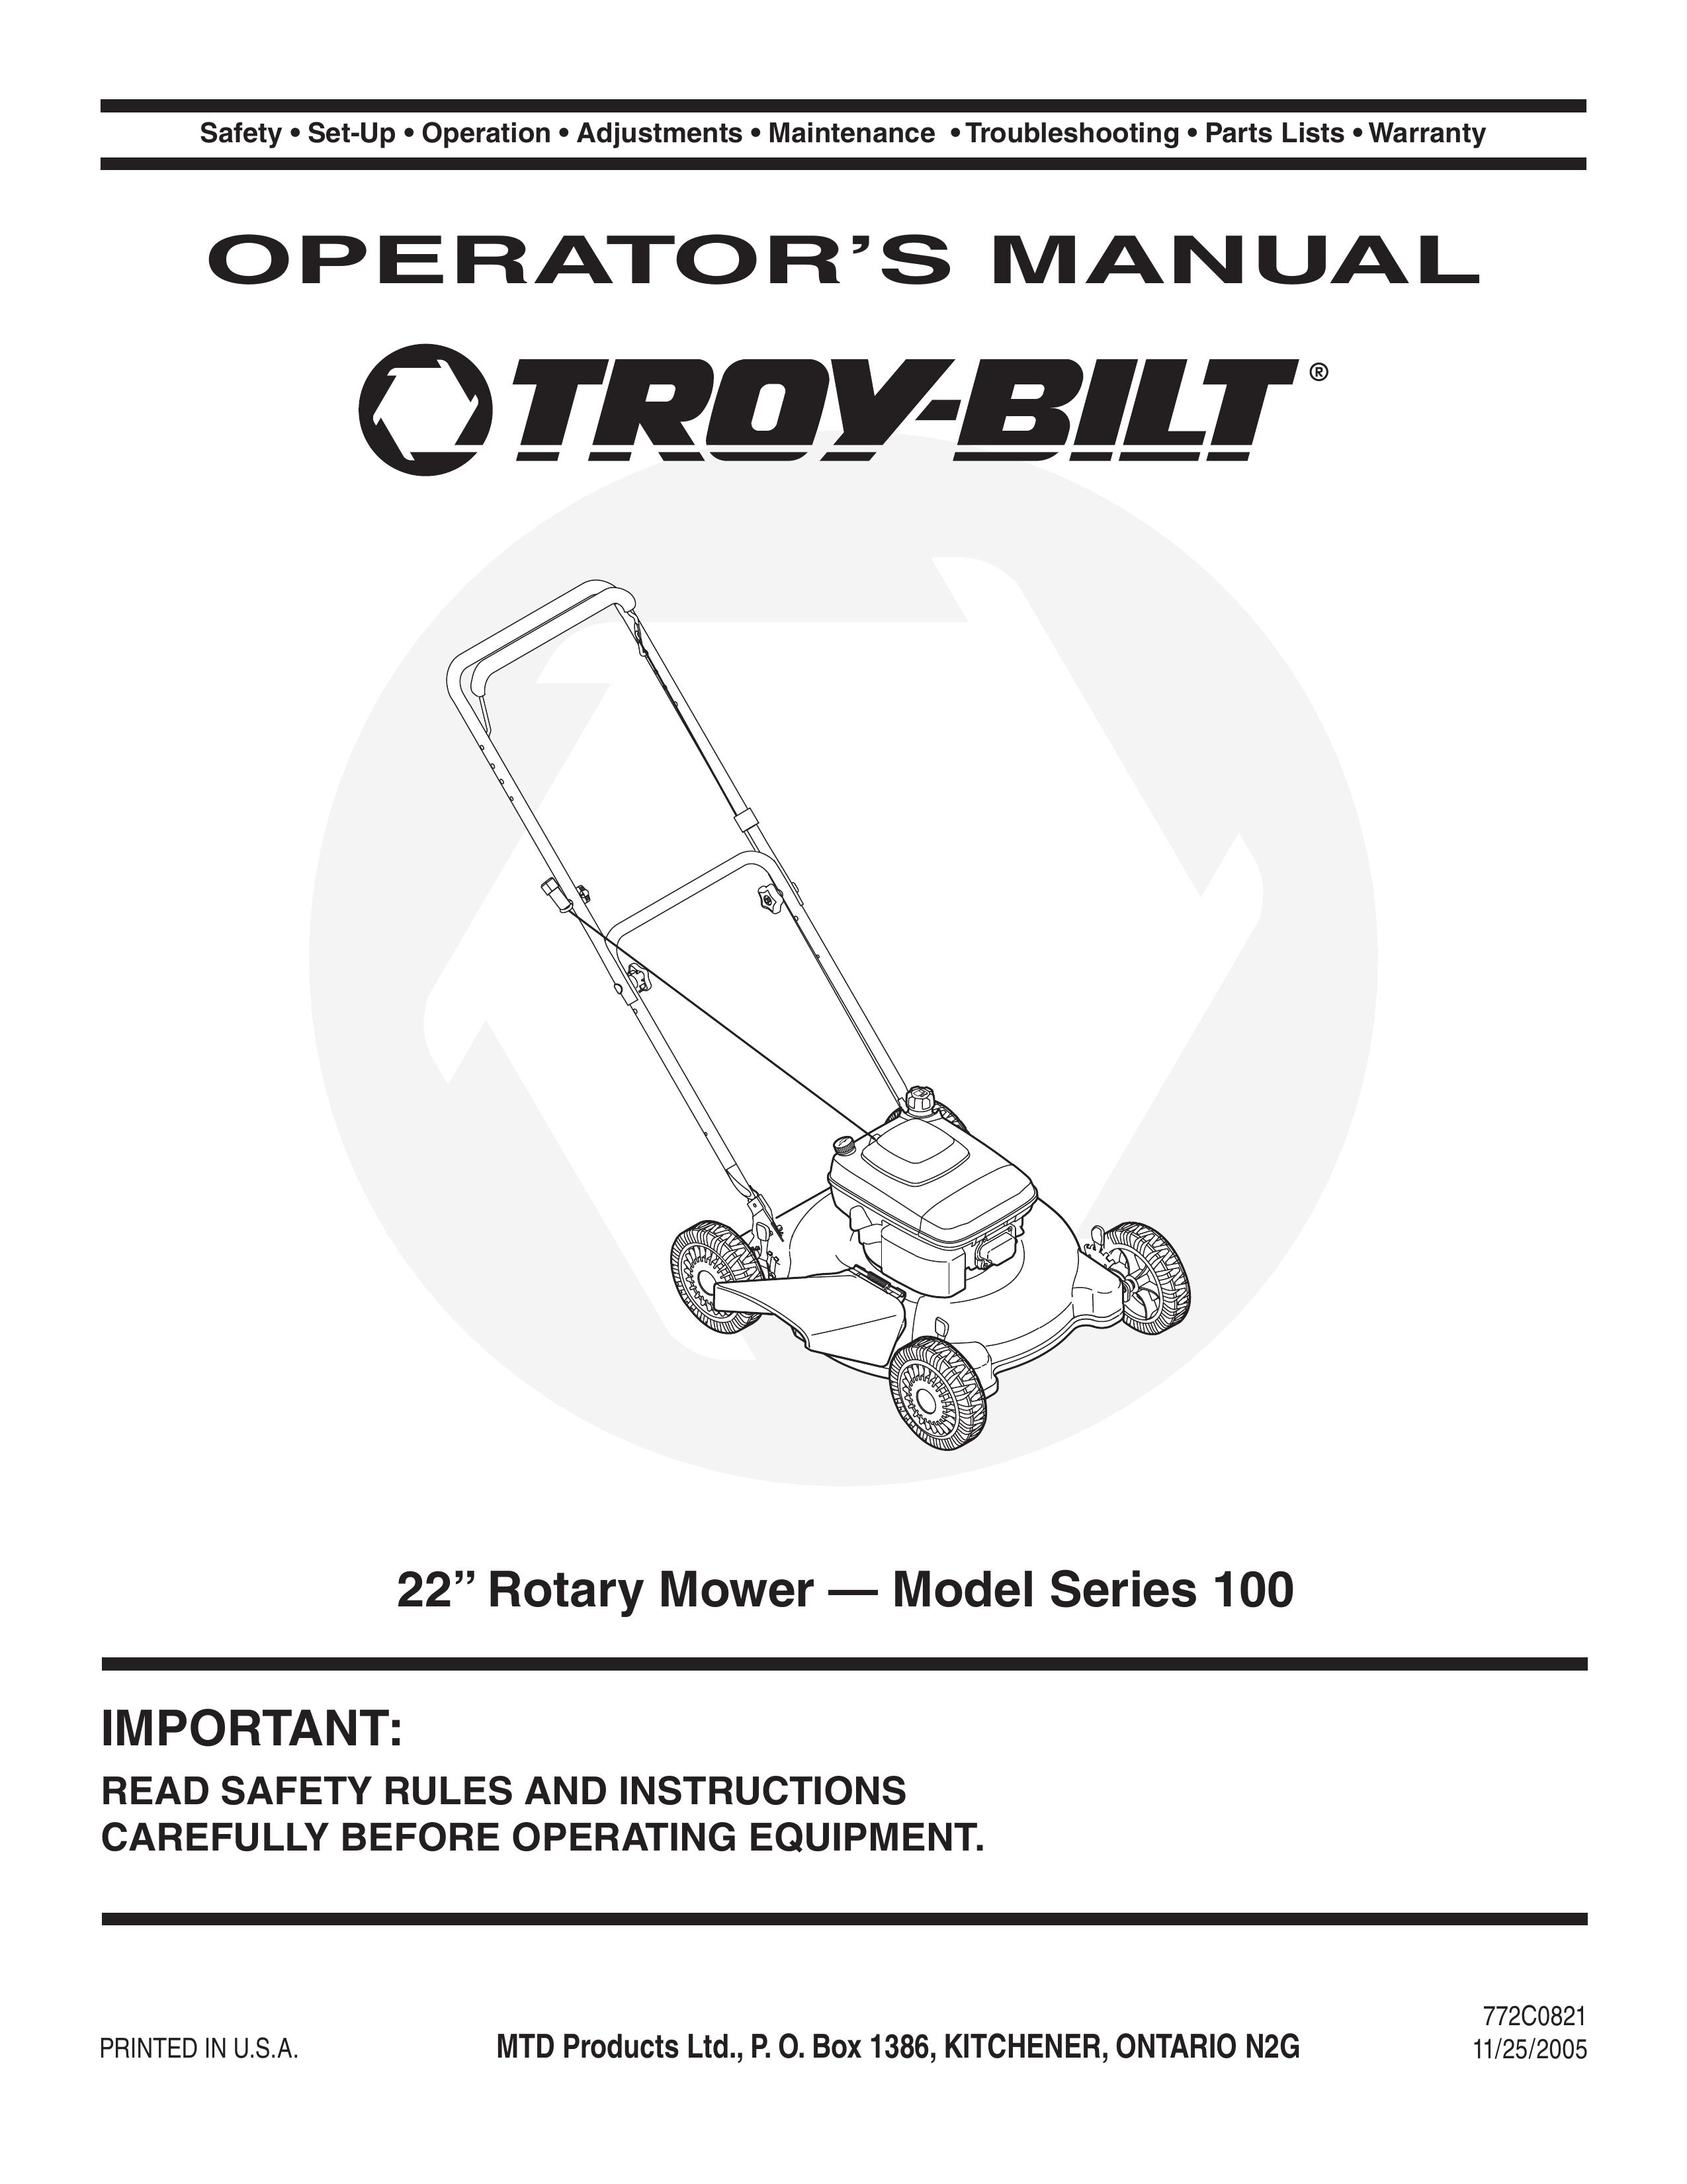 Troy-Bilt 100 Lawn Mower User Manual